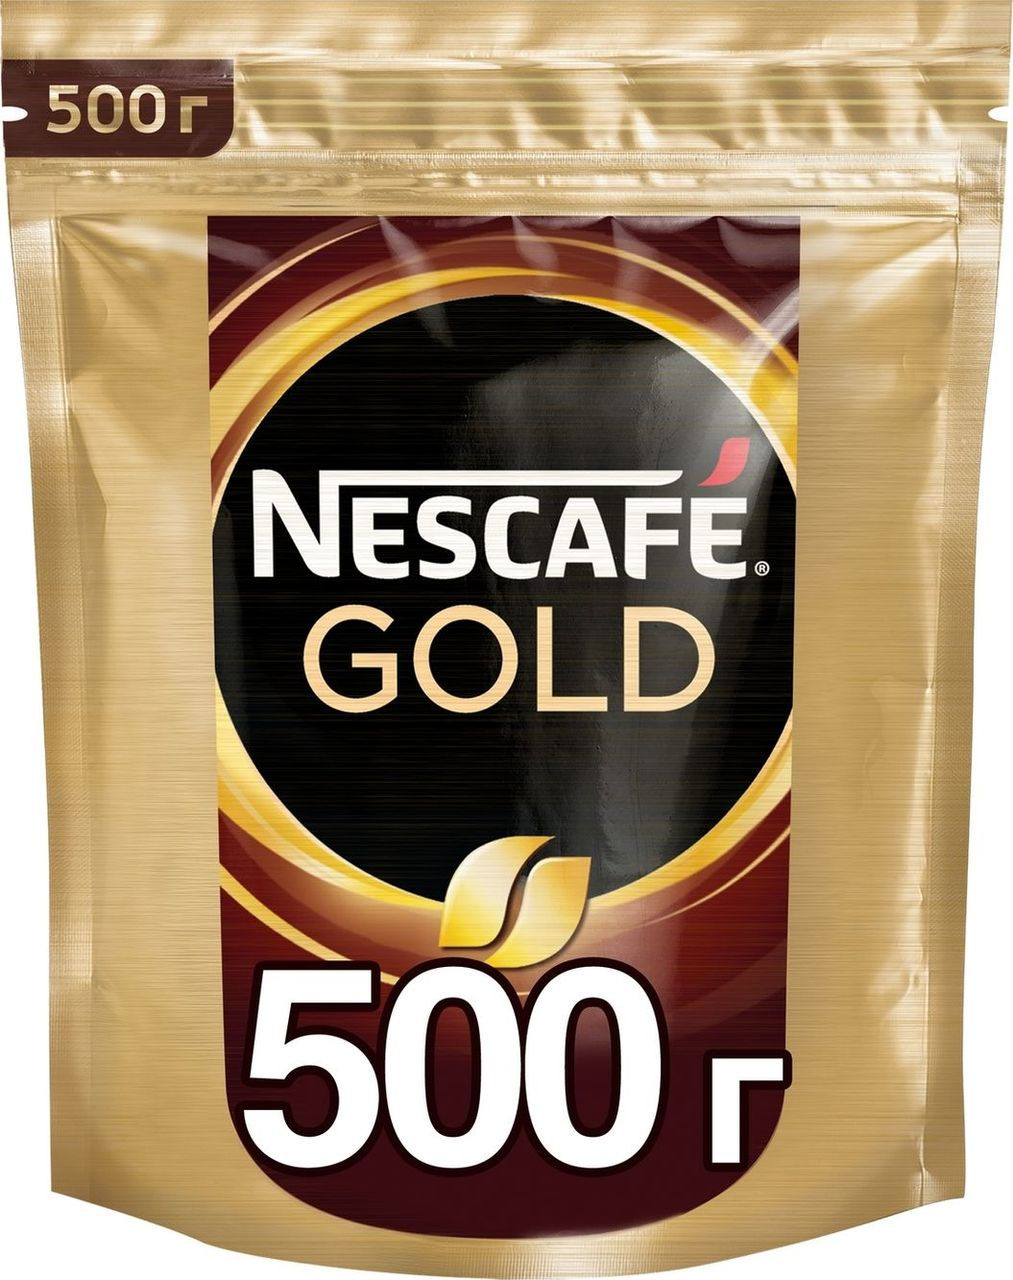 Nescafe gold растворимый 900. Кофе Нескафе Голд 500г м/у. Нескафе Голд в мягкой упаковке 500 грамм. Нескафе Голд 500 гр. м/у. Кофе Nescafe Gold пакет 500 гр.